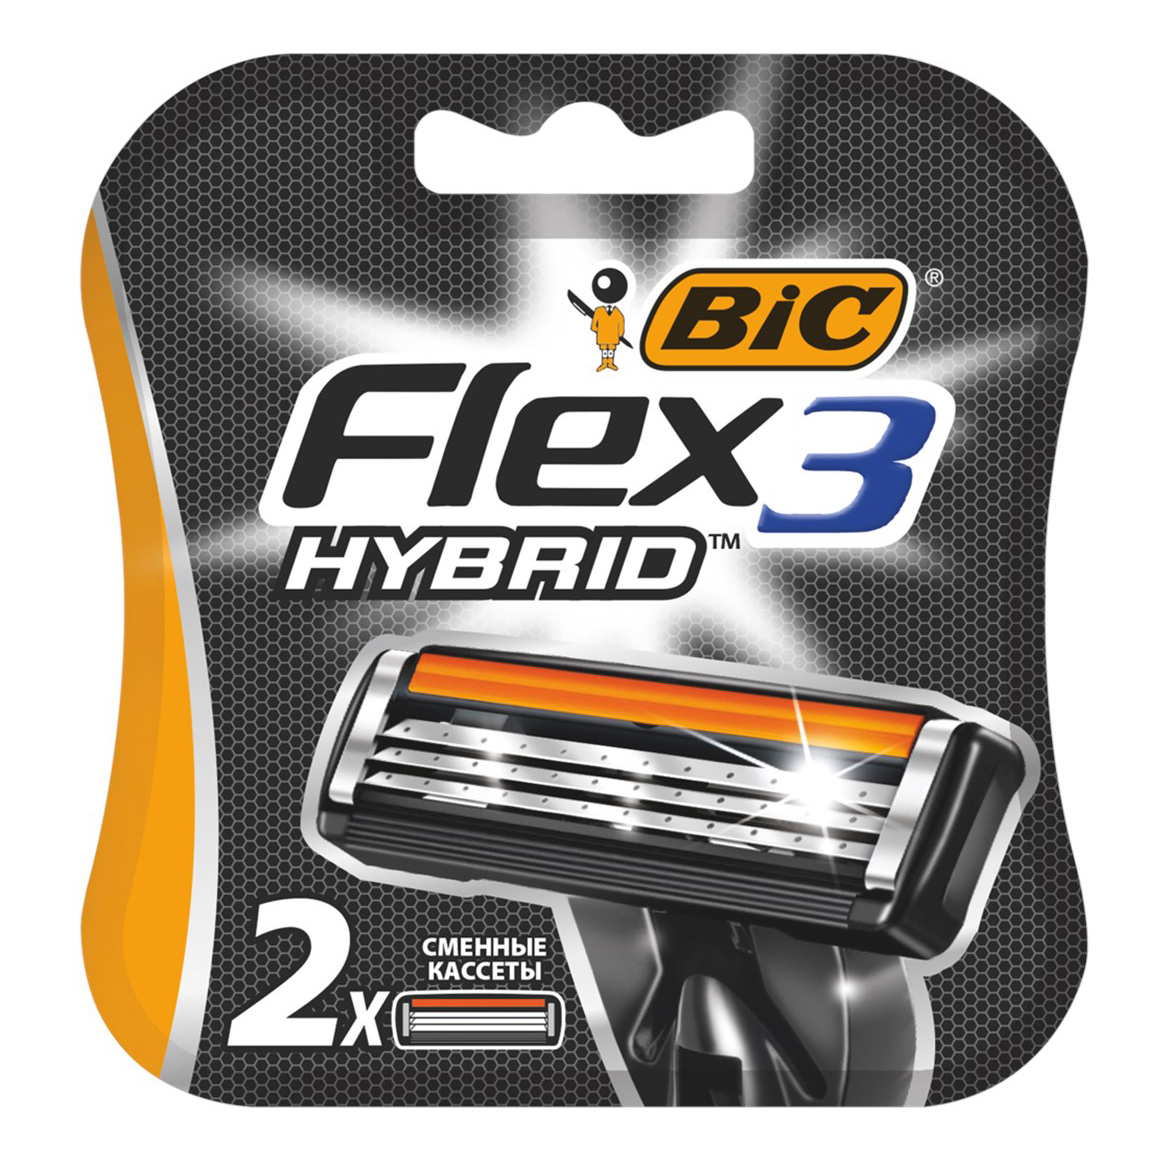 Сменная кассета Bic Flex 3 Hybrid 3 лезвия 2 шт сменная кассета для фильтра барьер классик